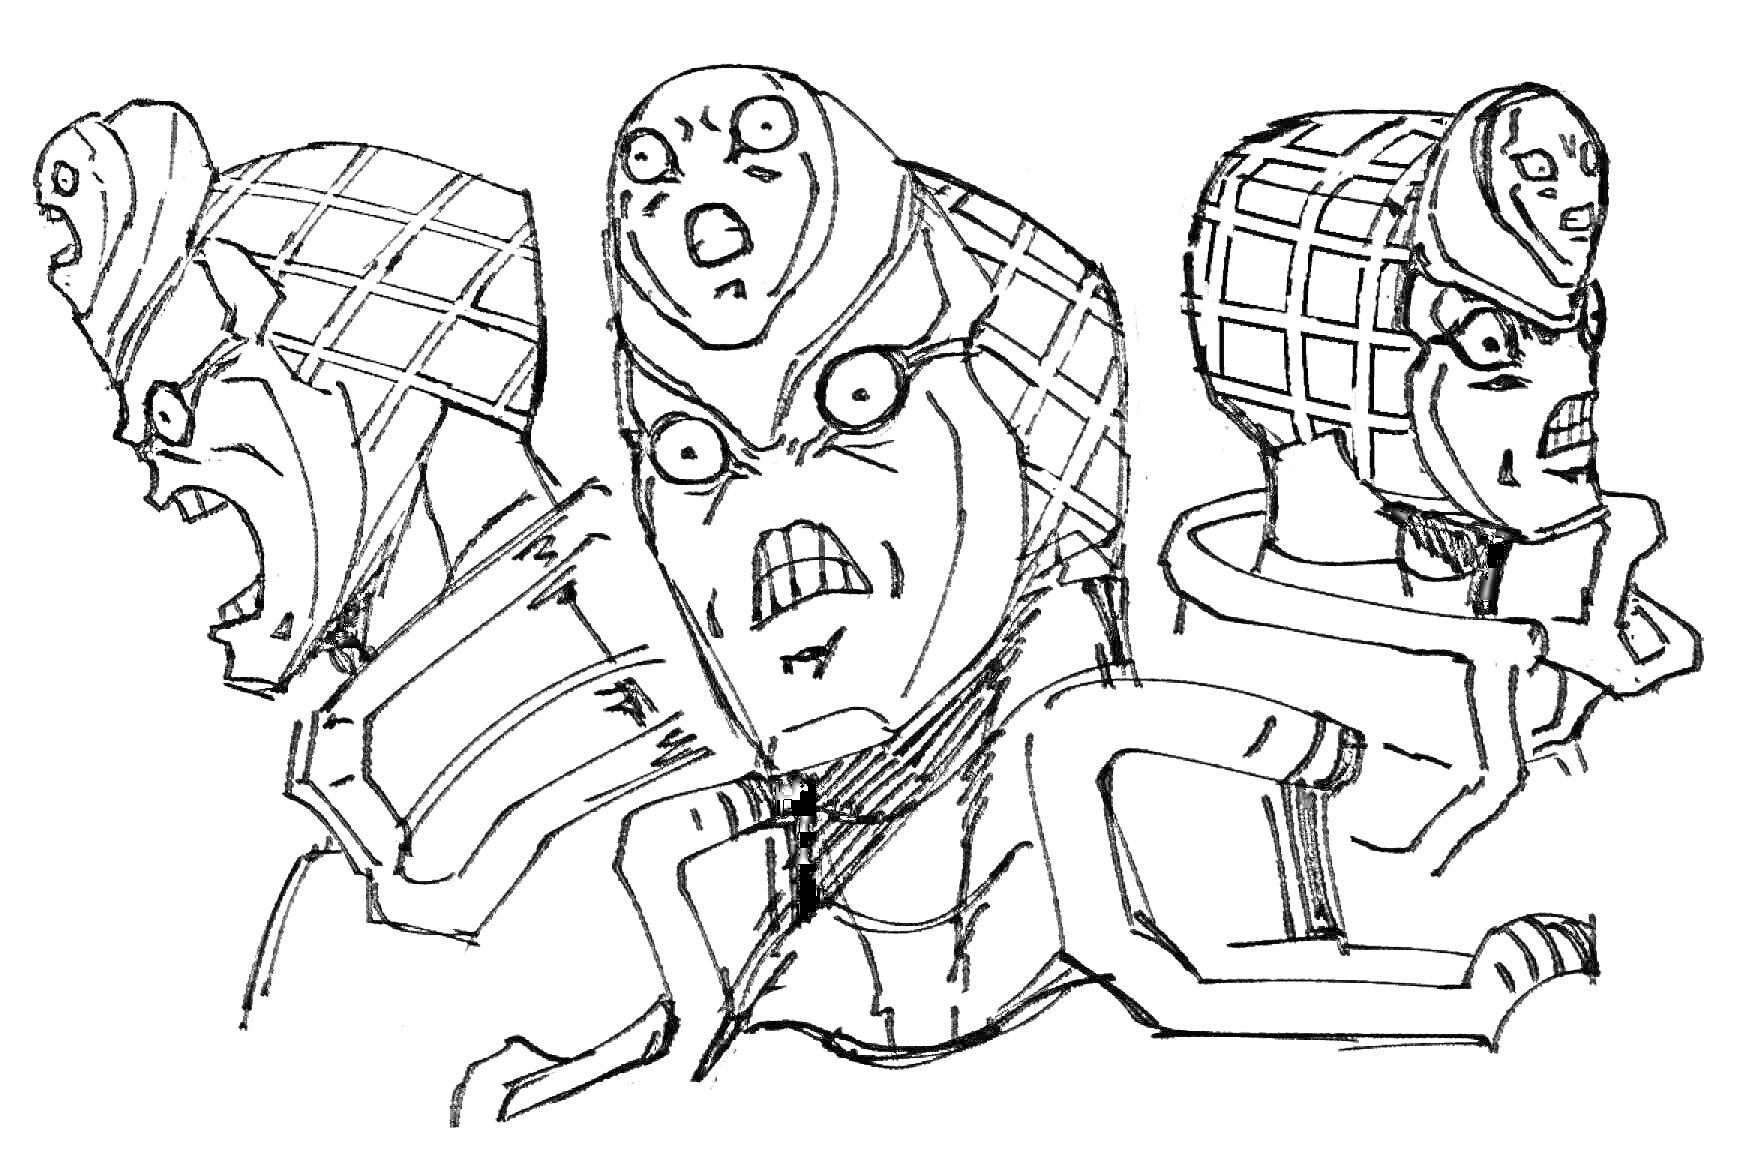 Раскраска Три выражения лица персонажа с уникальным шлемом, узором на шлеме и тремя различными гримасами